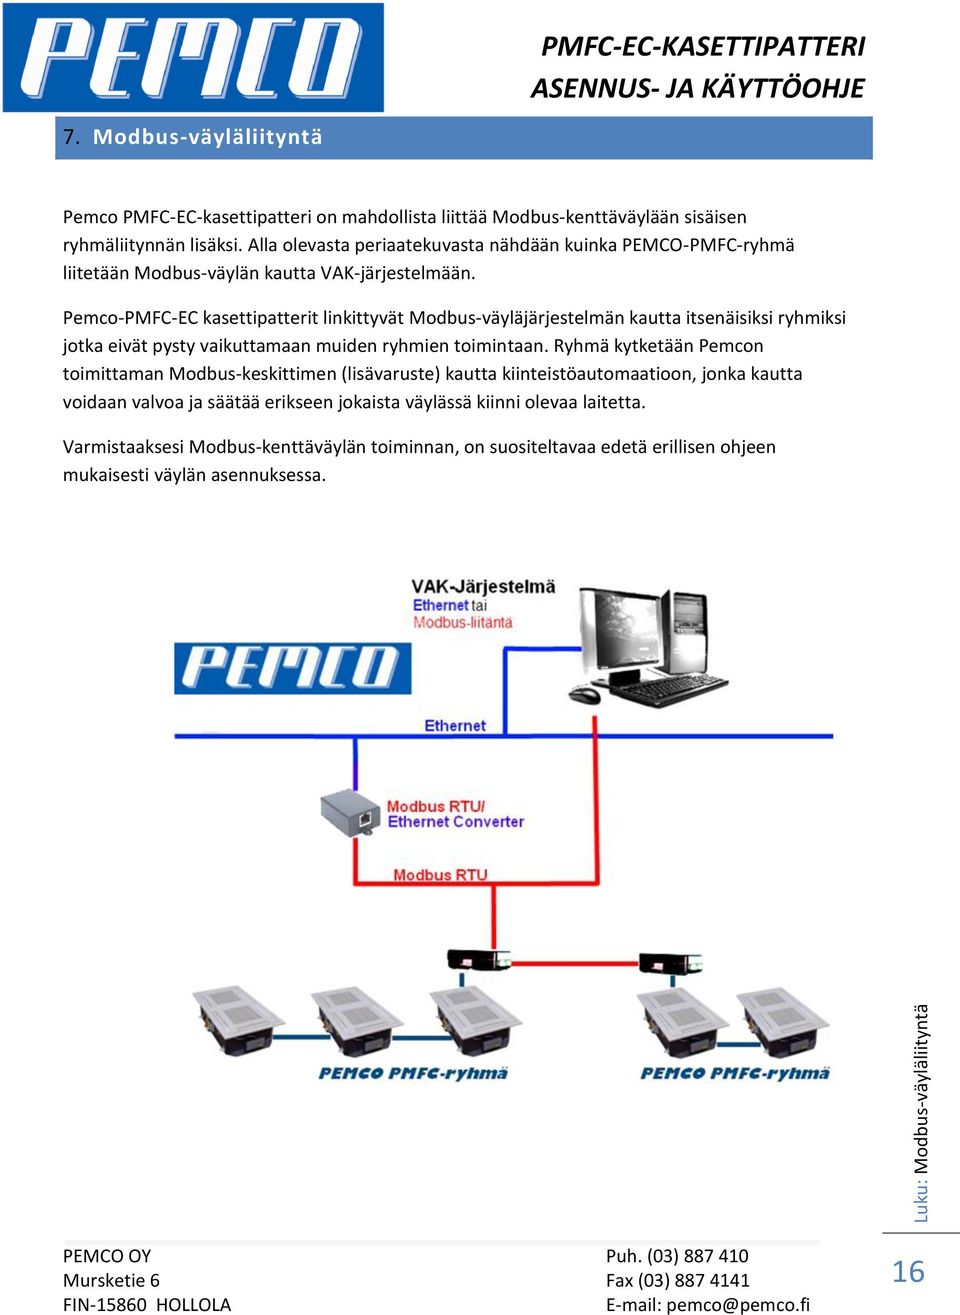 Pemco-PMFC-EC kasettipatterit linkittyvät Modbus-väyläjärjestelmän kautta itsenäisiksi ryhmiksi jotka eivät pysty vaikuttamaan muiden ryhmien toimintaan.